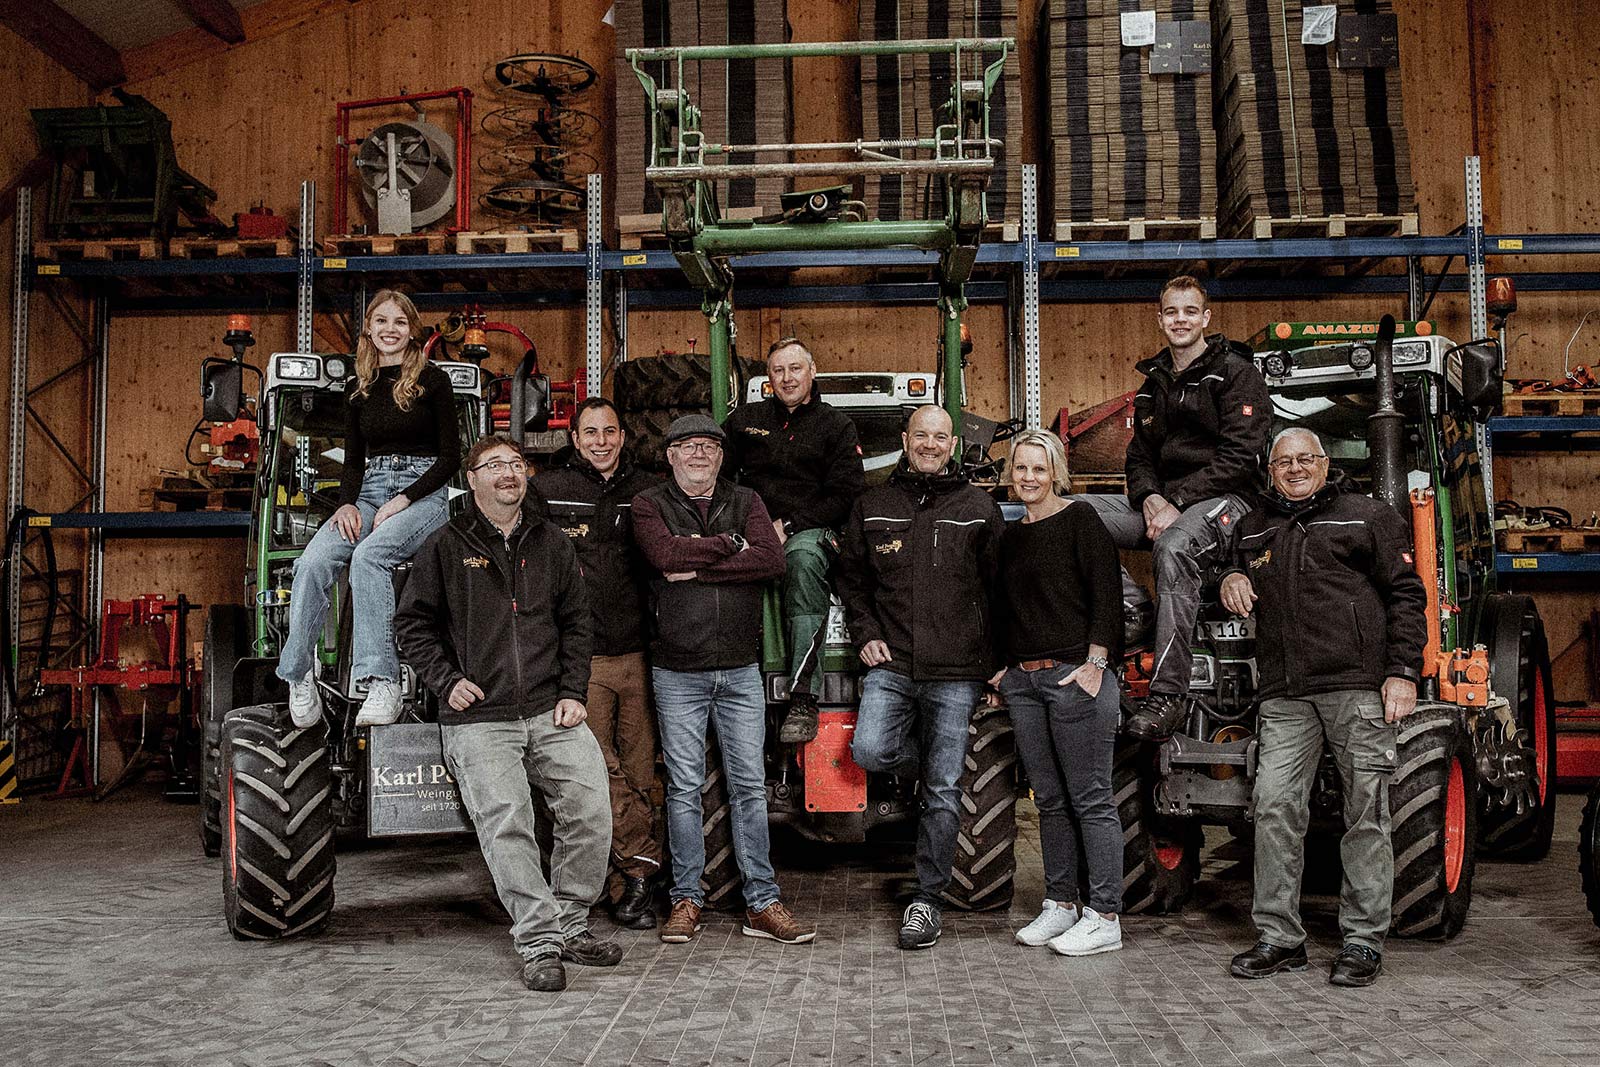 Wein aus dem Saarland – Weingut Karl Petgen – Team vor den Traktoren